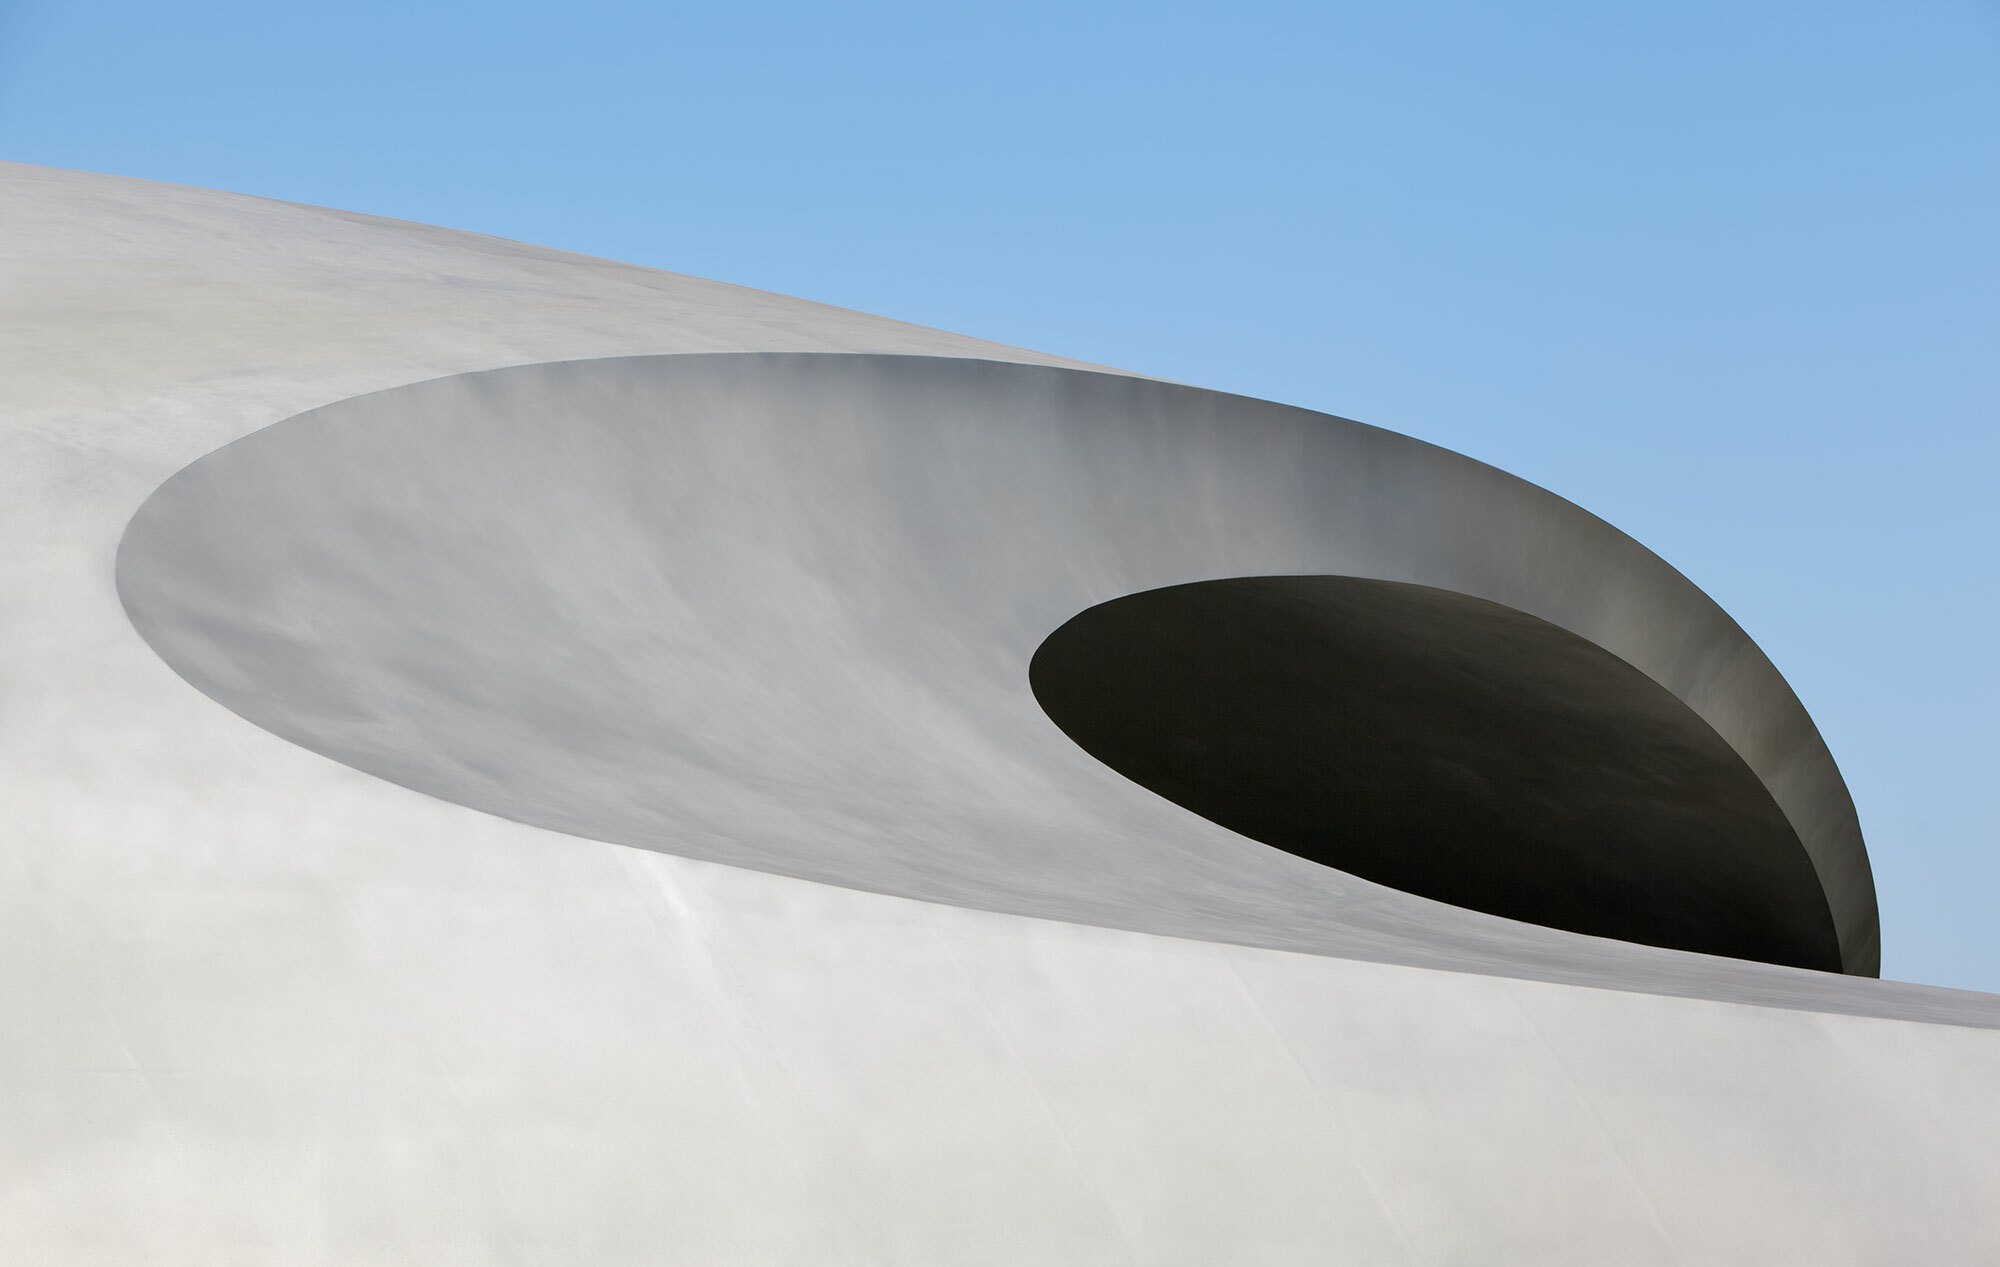 Detailaufnahme der dynamischen Formsprache des Porsche Pavillon.